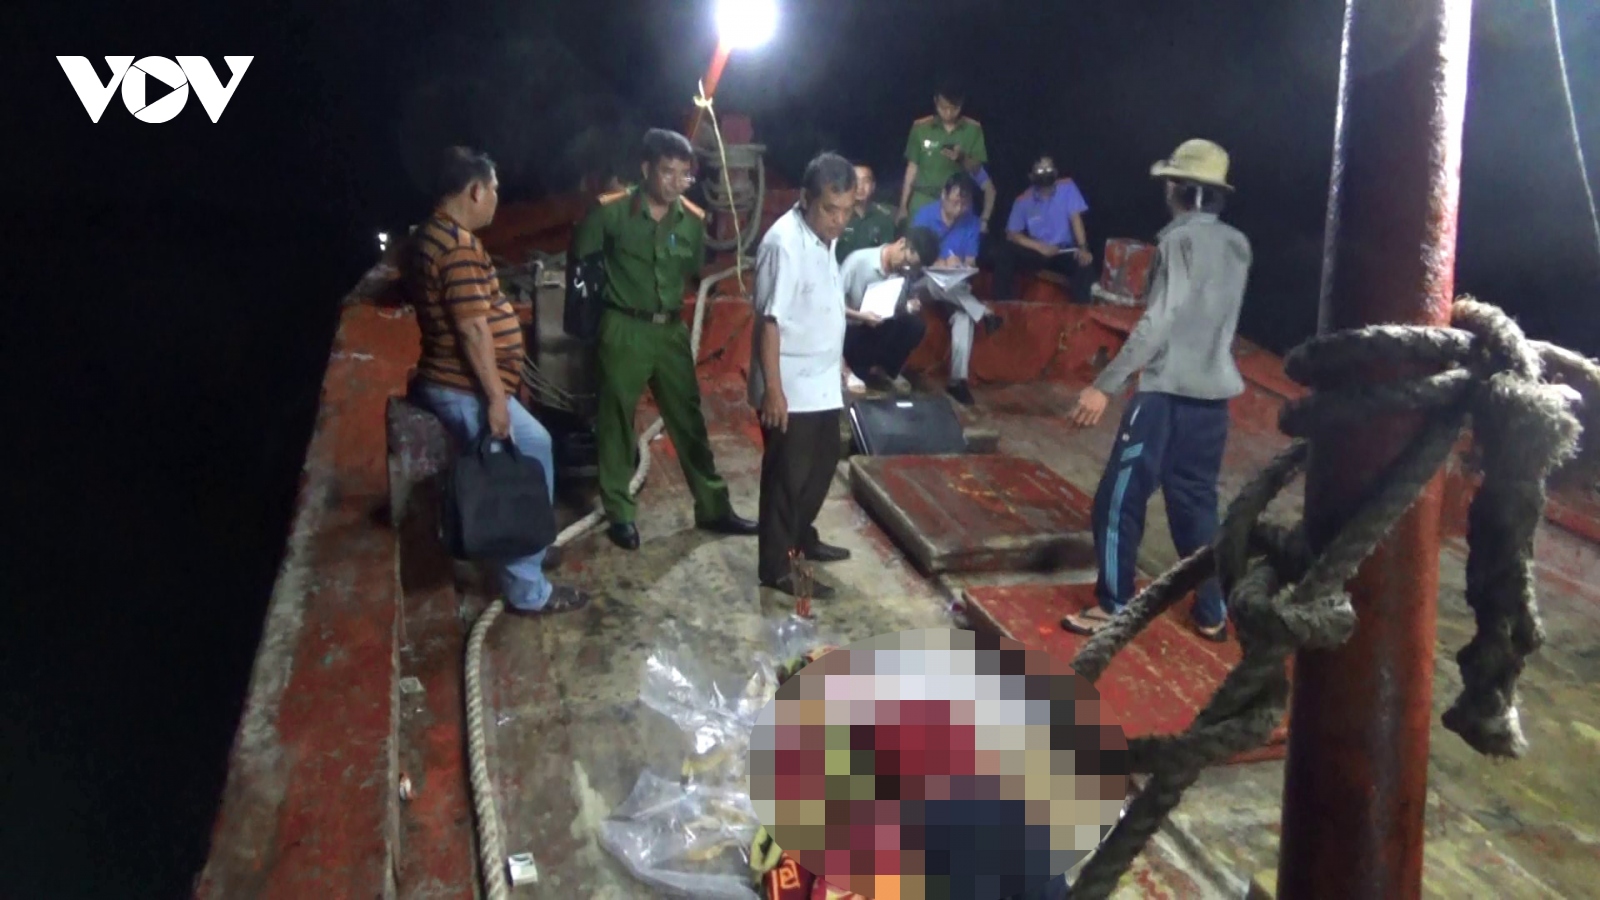 Thêm vụ xô xát trên tàu cá ở Tiền Giang, 1 thuyền viên tử vong